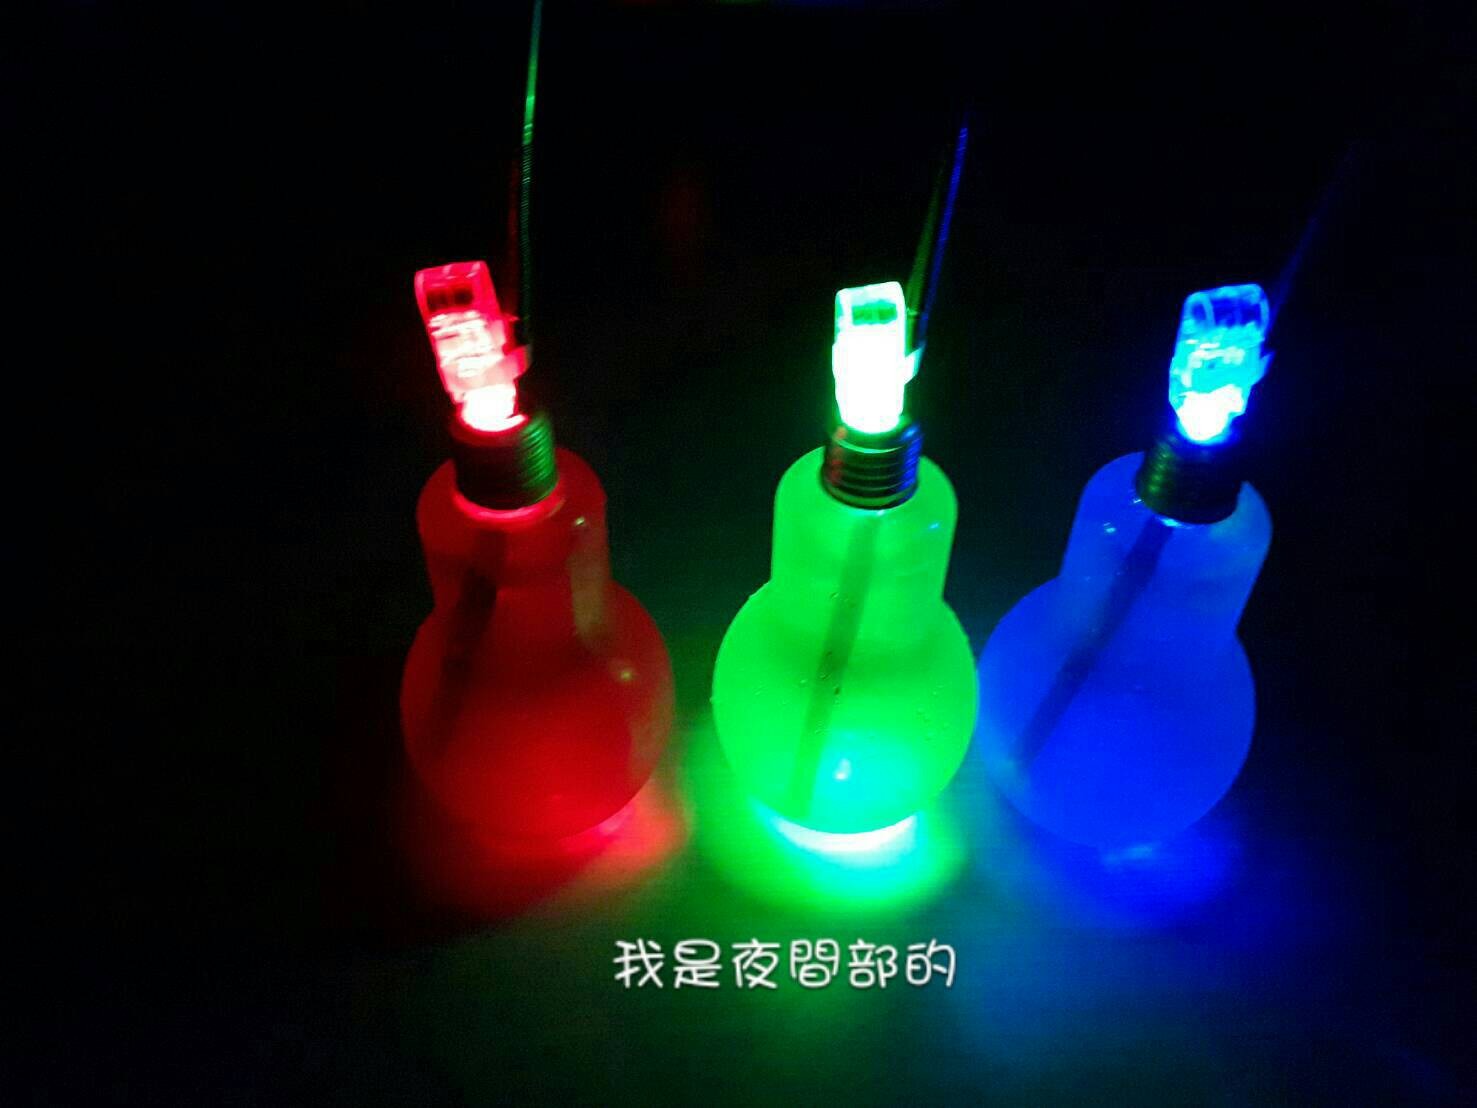 燈泡造型飲品-藍柑桔特調(400ml塑膠燈泡瓶LED發光款)